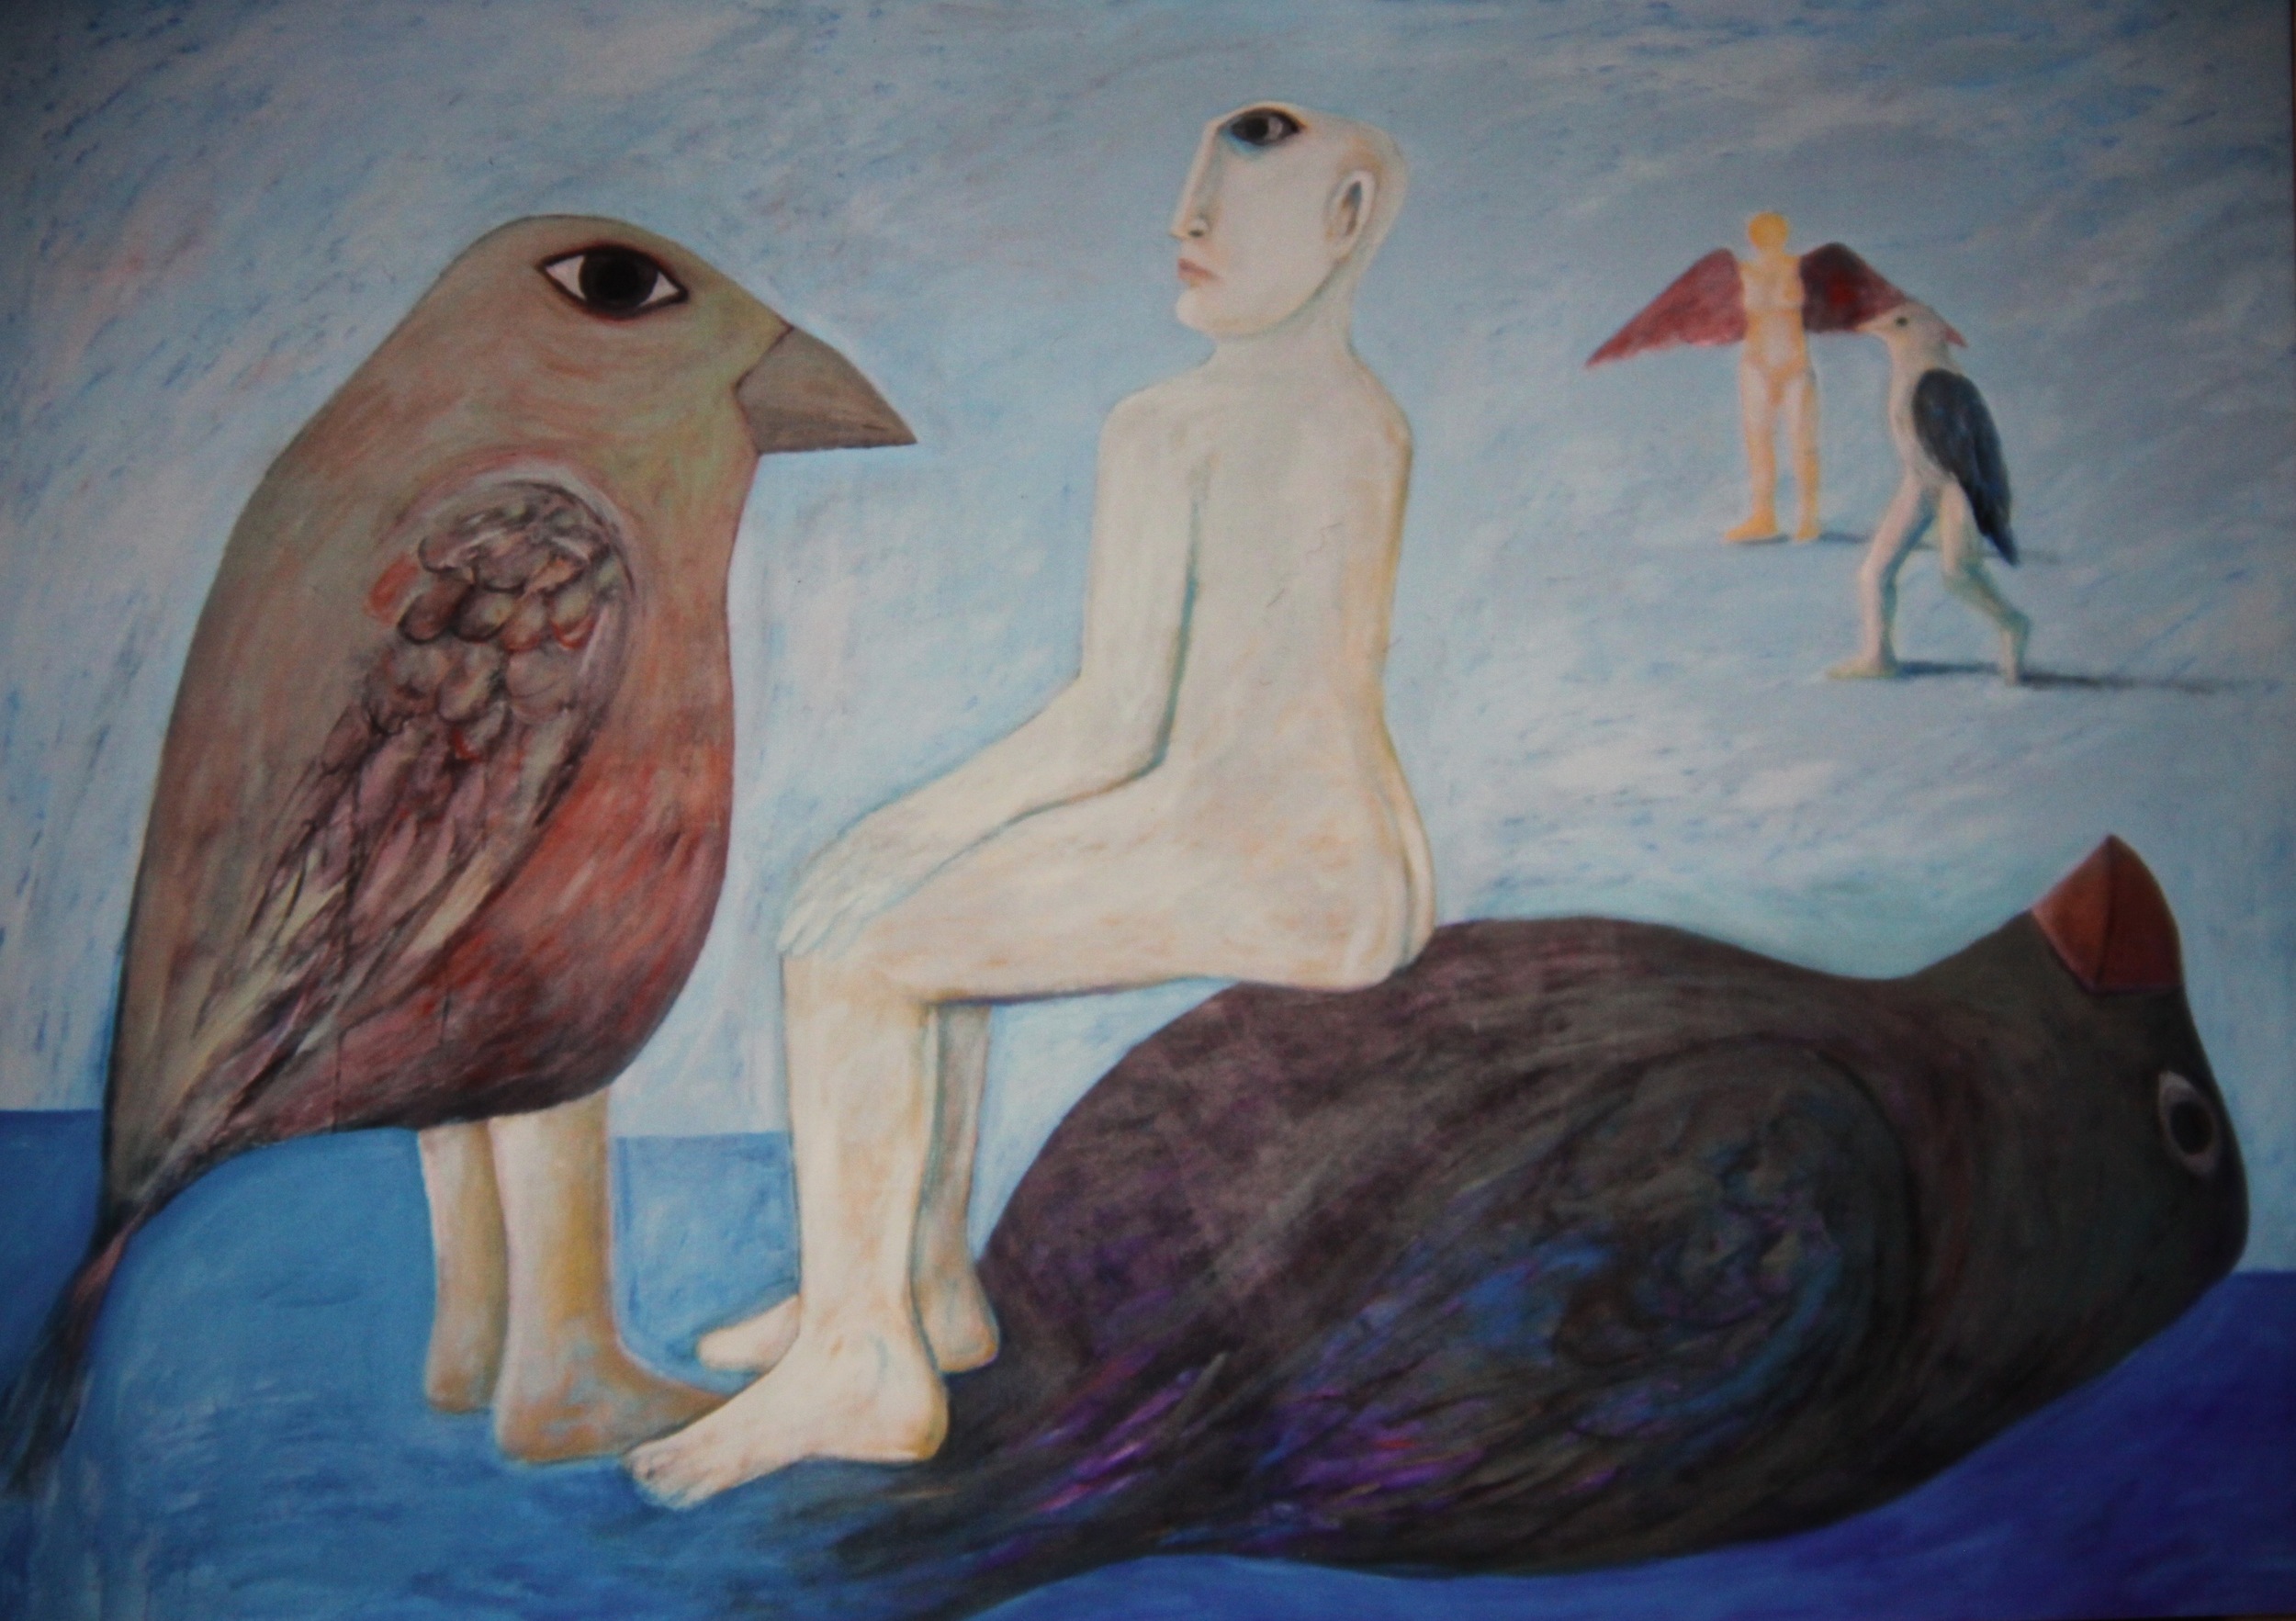  Ahmed Morsi, Black Bird,&nbsp;2007,&nbsp;Acrylic on canvas,&nbsp;253 x 203 cm.       